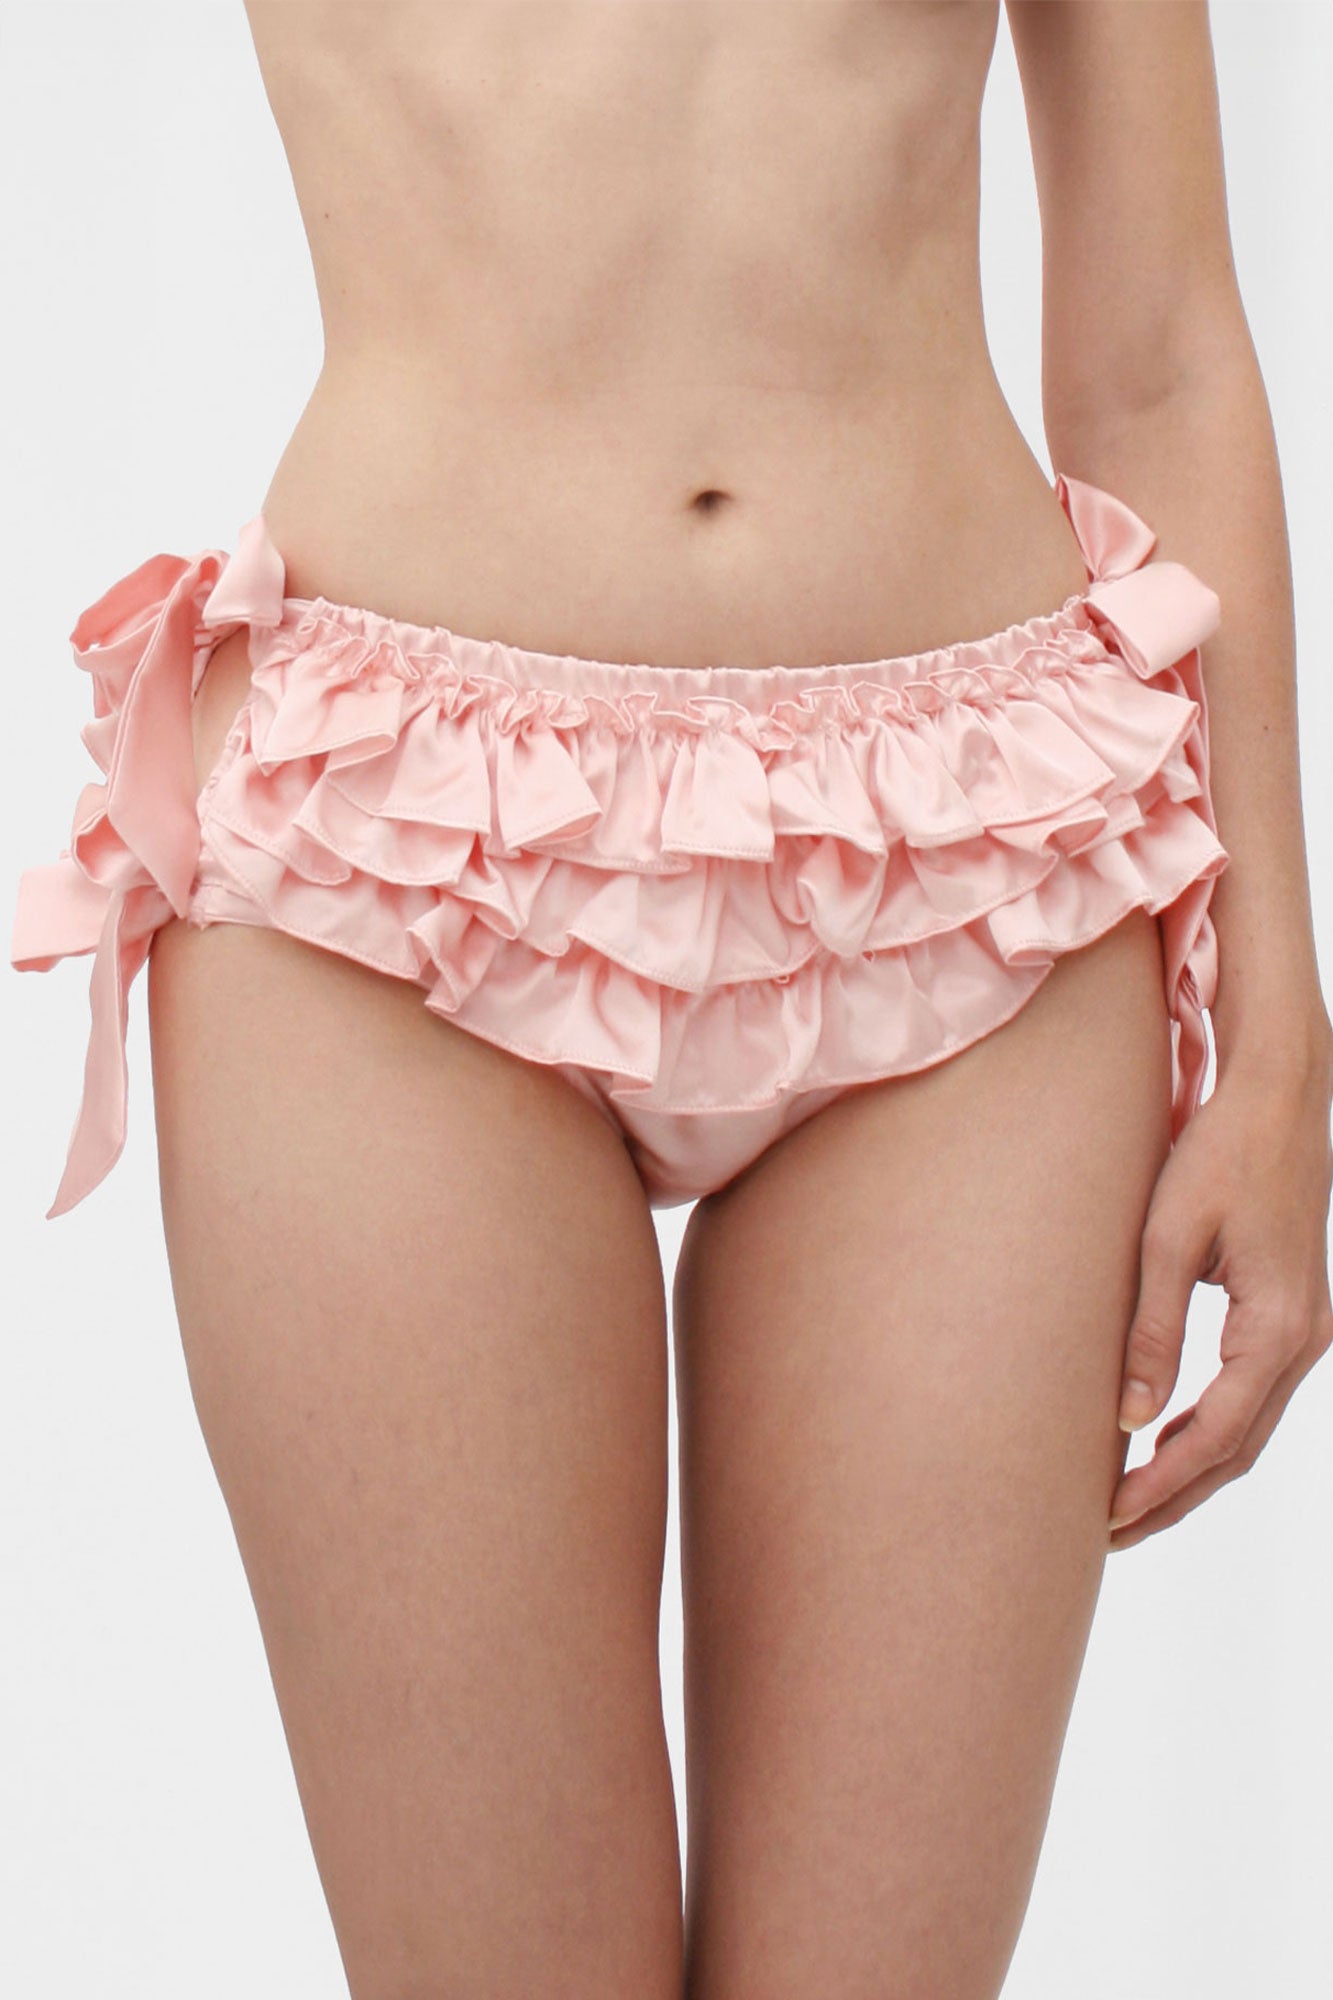 100% silk pink ruffled panties by luxury lingerie designer Angela Friedman